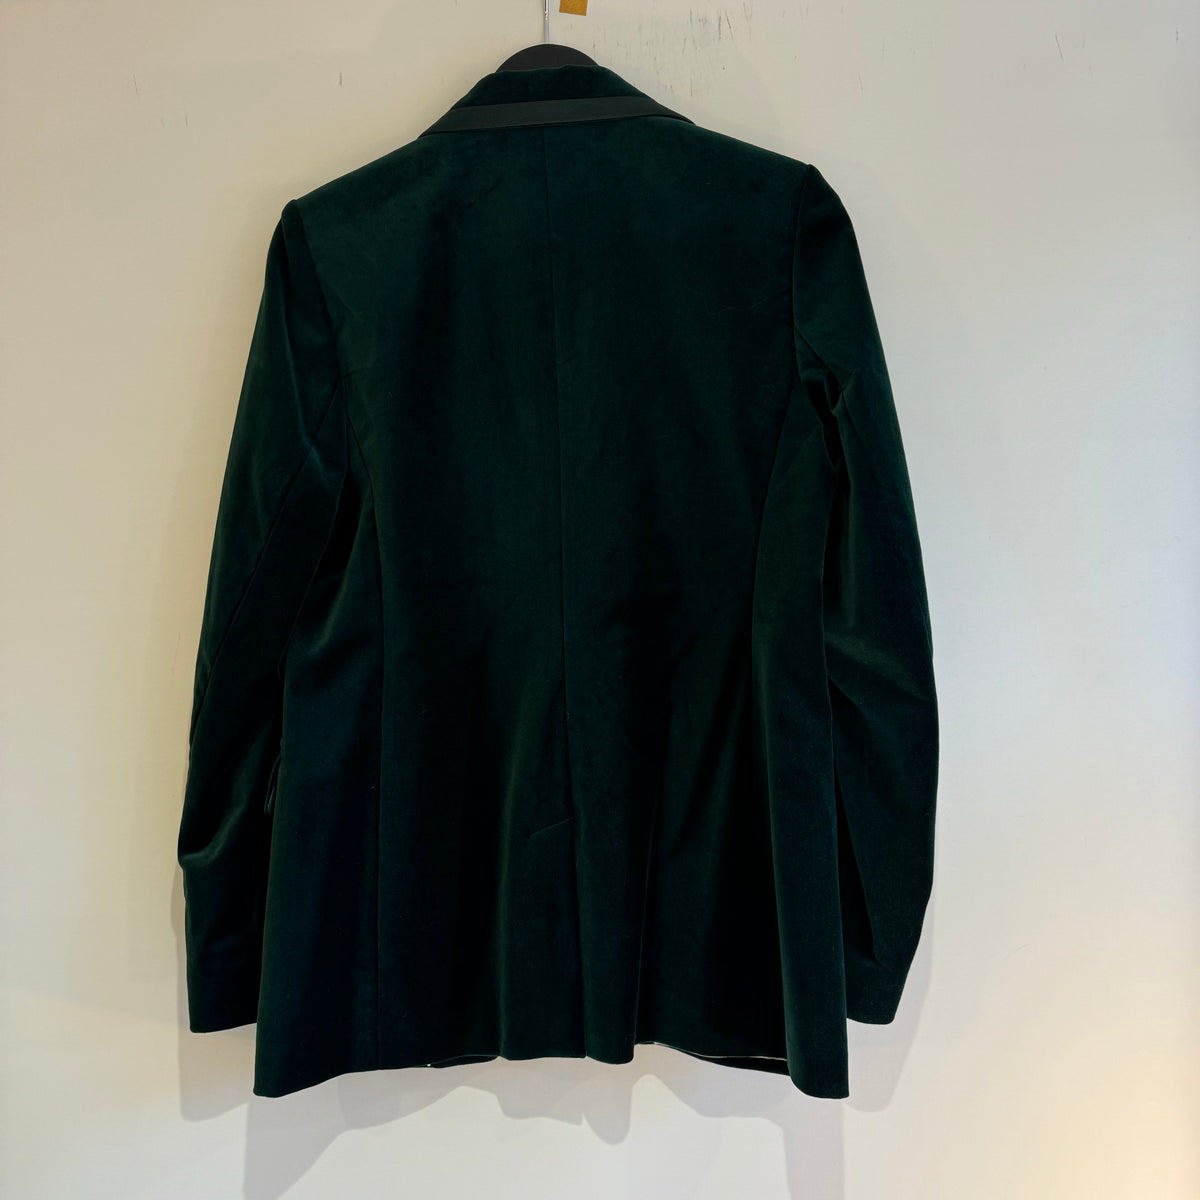 Jigsaw velvet tuxedo jacket Emerald 12